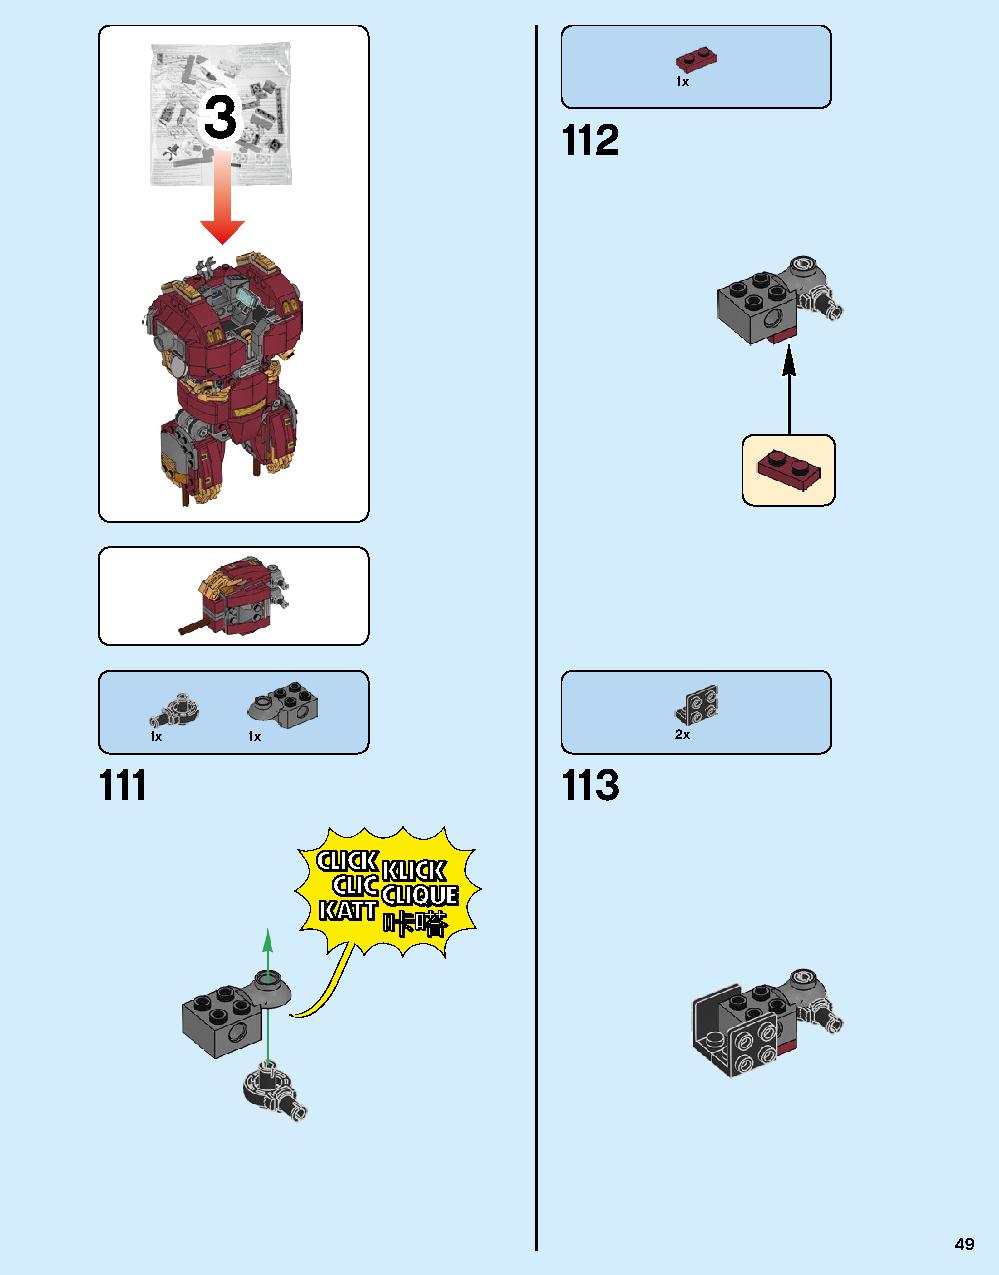 ハルクバスター：ウルトロン・エディション 76105 レゴの商品情報 レゴの説明書・組立方法 49 page